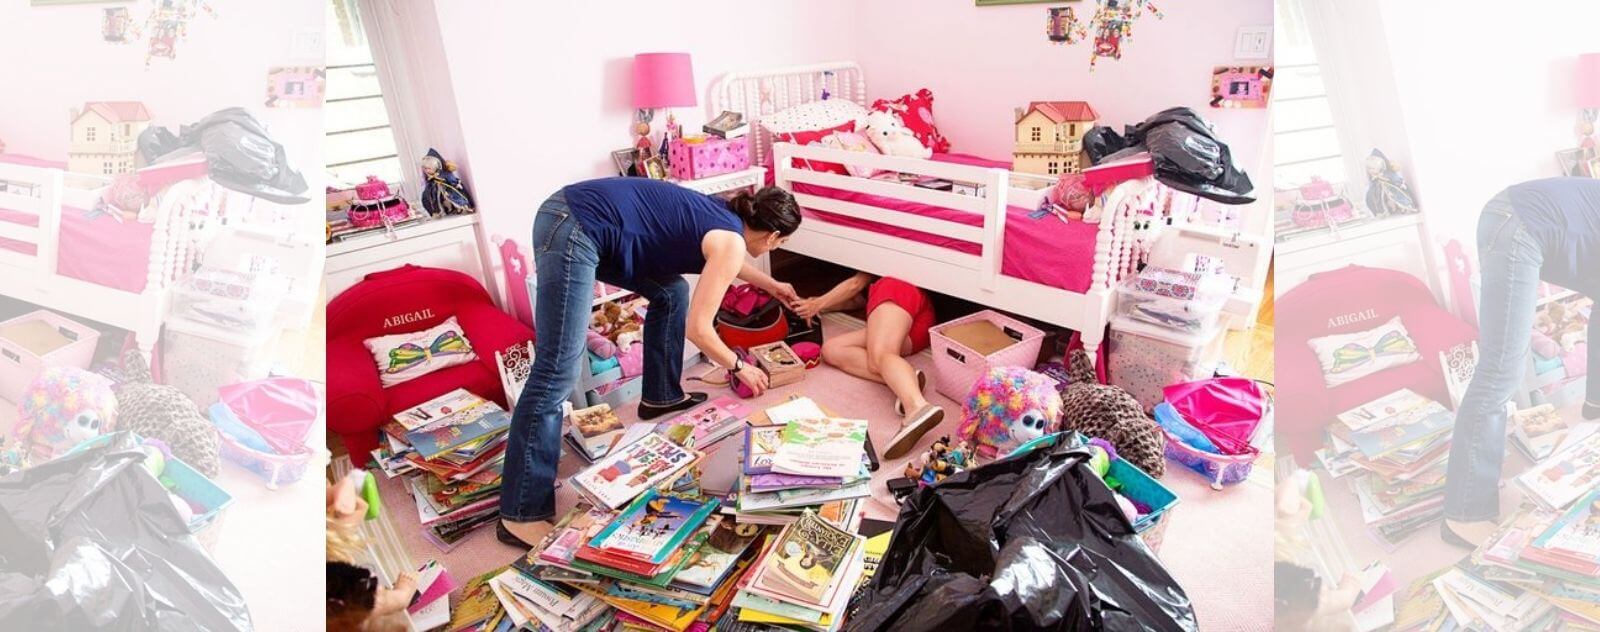 Comment apprendre à son enfant à jouer dans sa chambre ? 